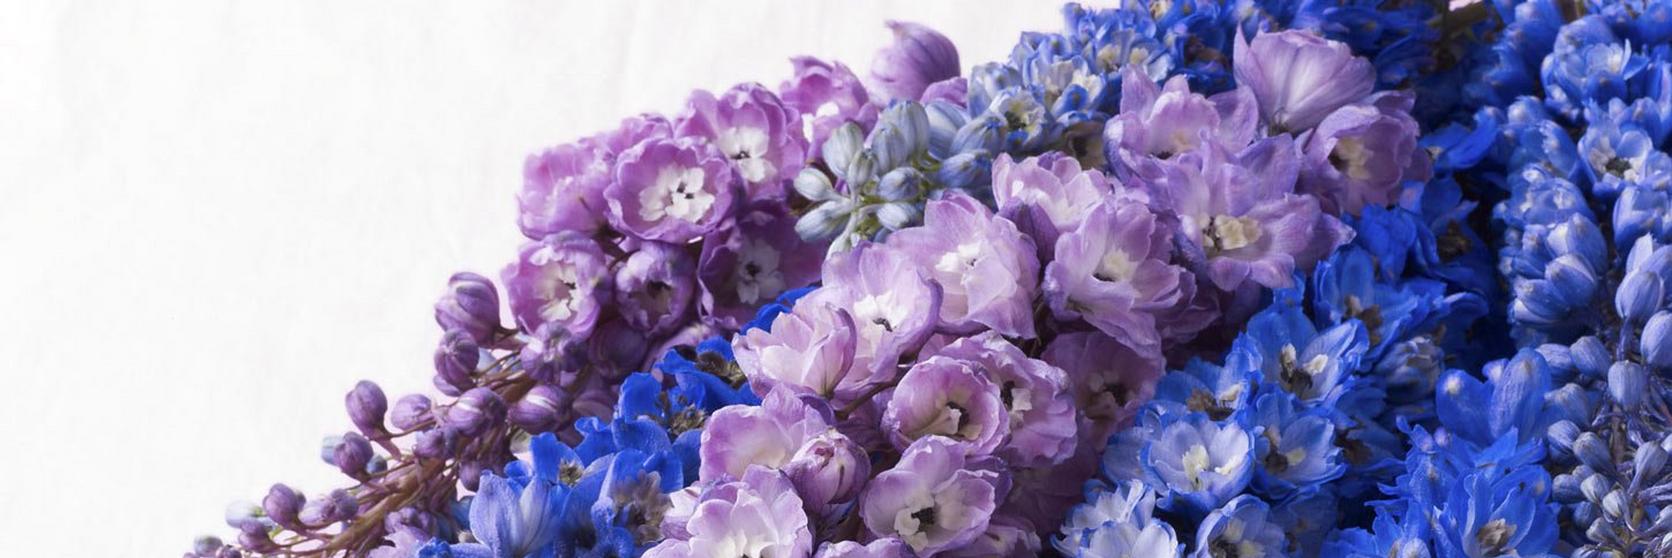 Delphinium-liac-blue-flowers